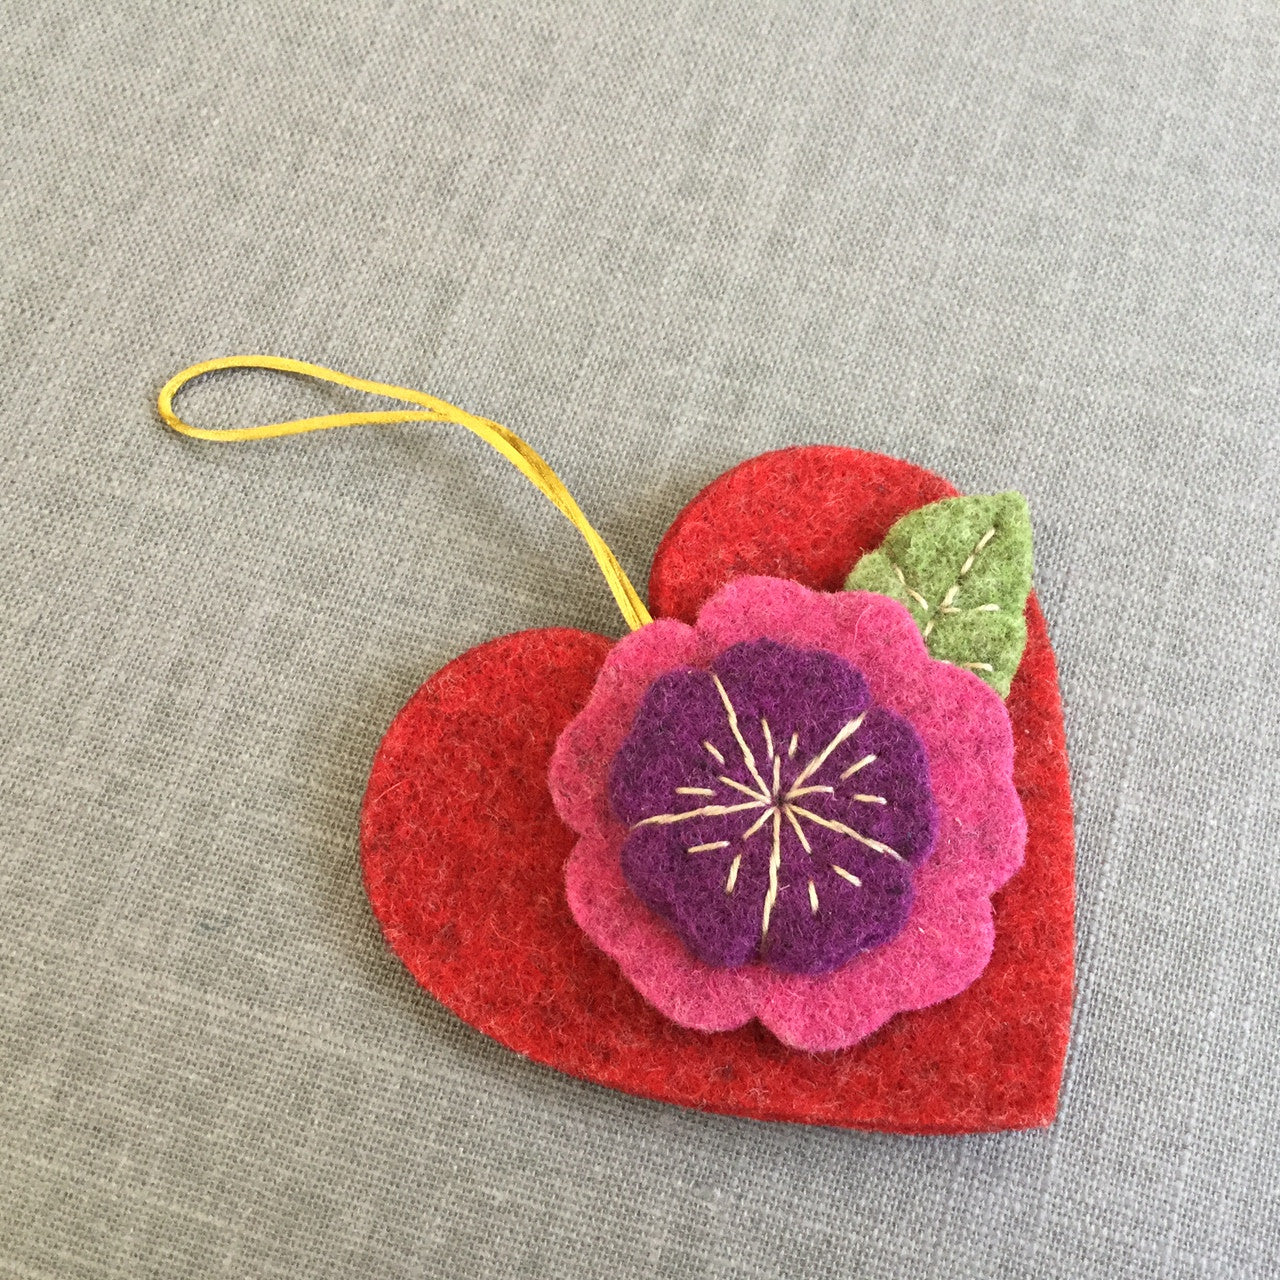 Heart Decor Embroidery Design